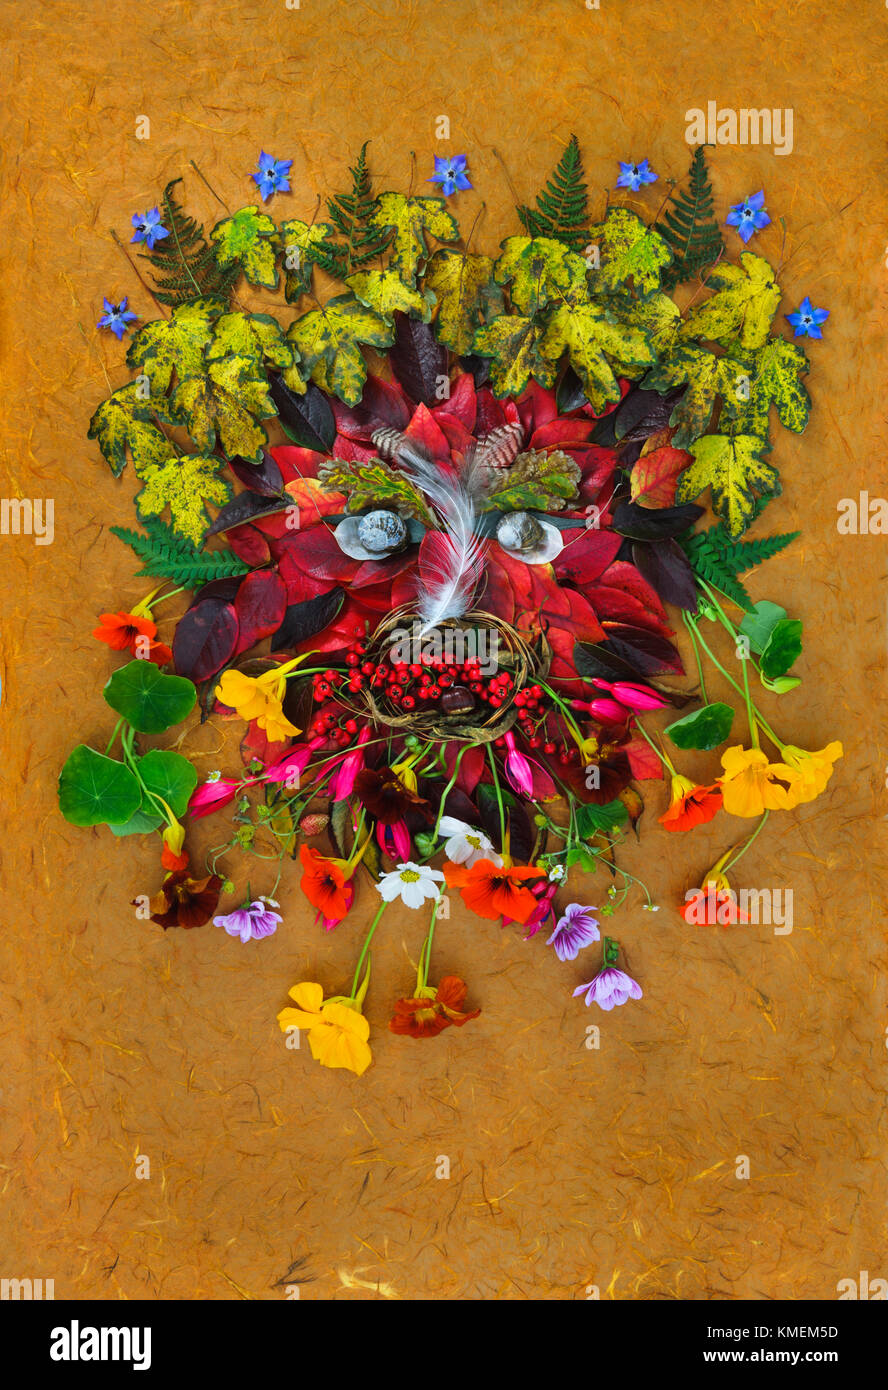 Der Grüne Mann Gesicht ab Herbst Blätter, Blüten, Beeren, Federn und Schneckenschalen. Symbol der natürlichen Regeneration Stockfoto